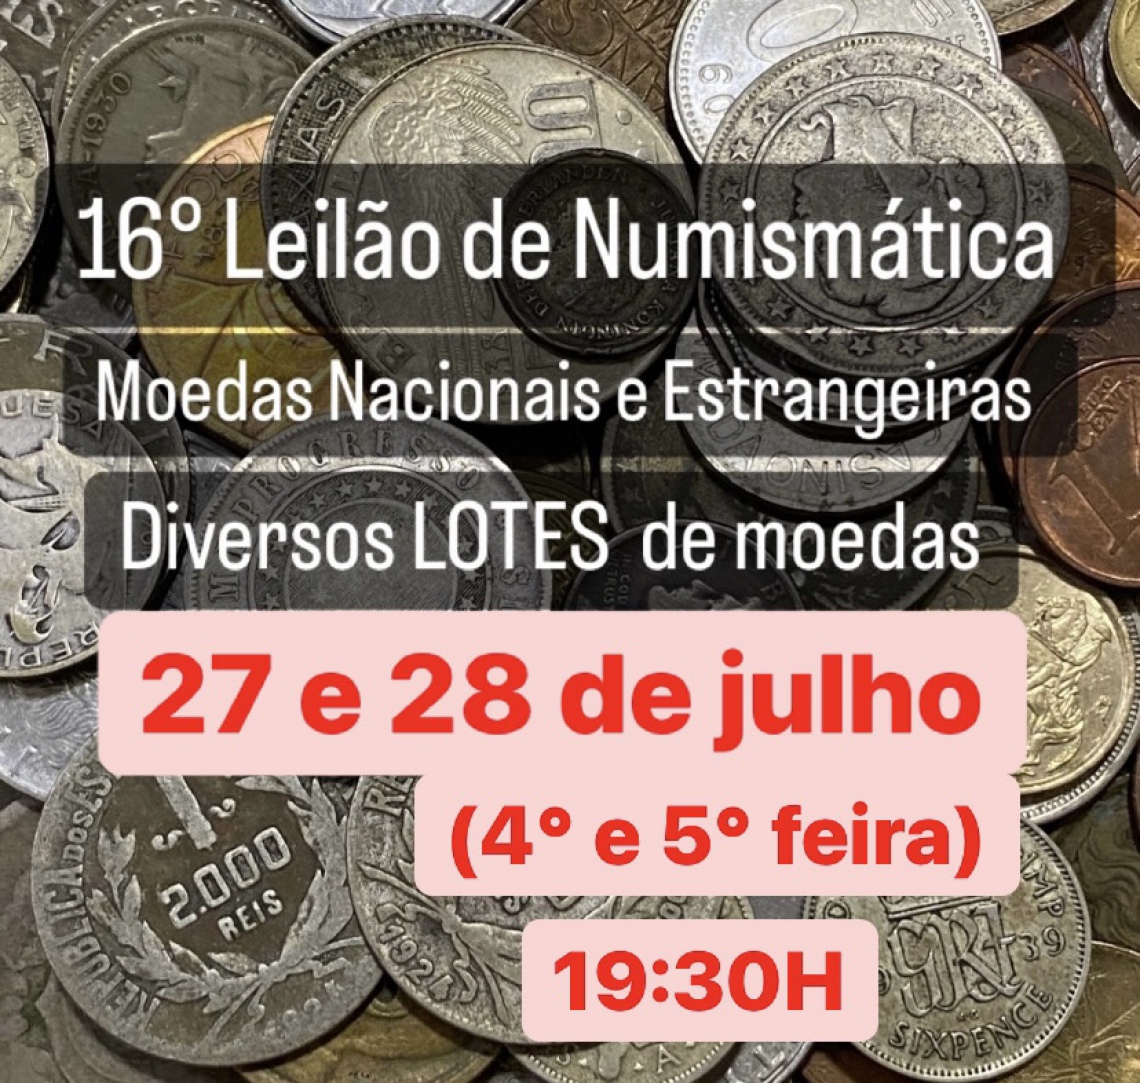 16 Leilão de Numismática, Moedas Nacionais e Estrangeiras